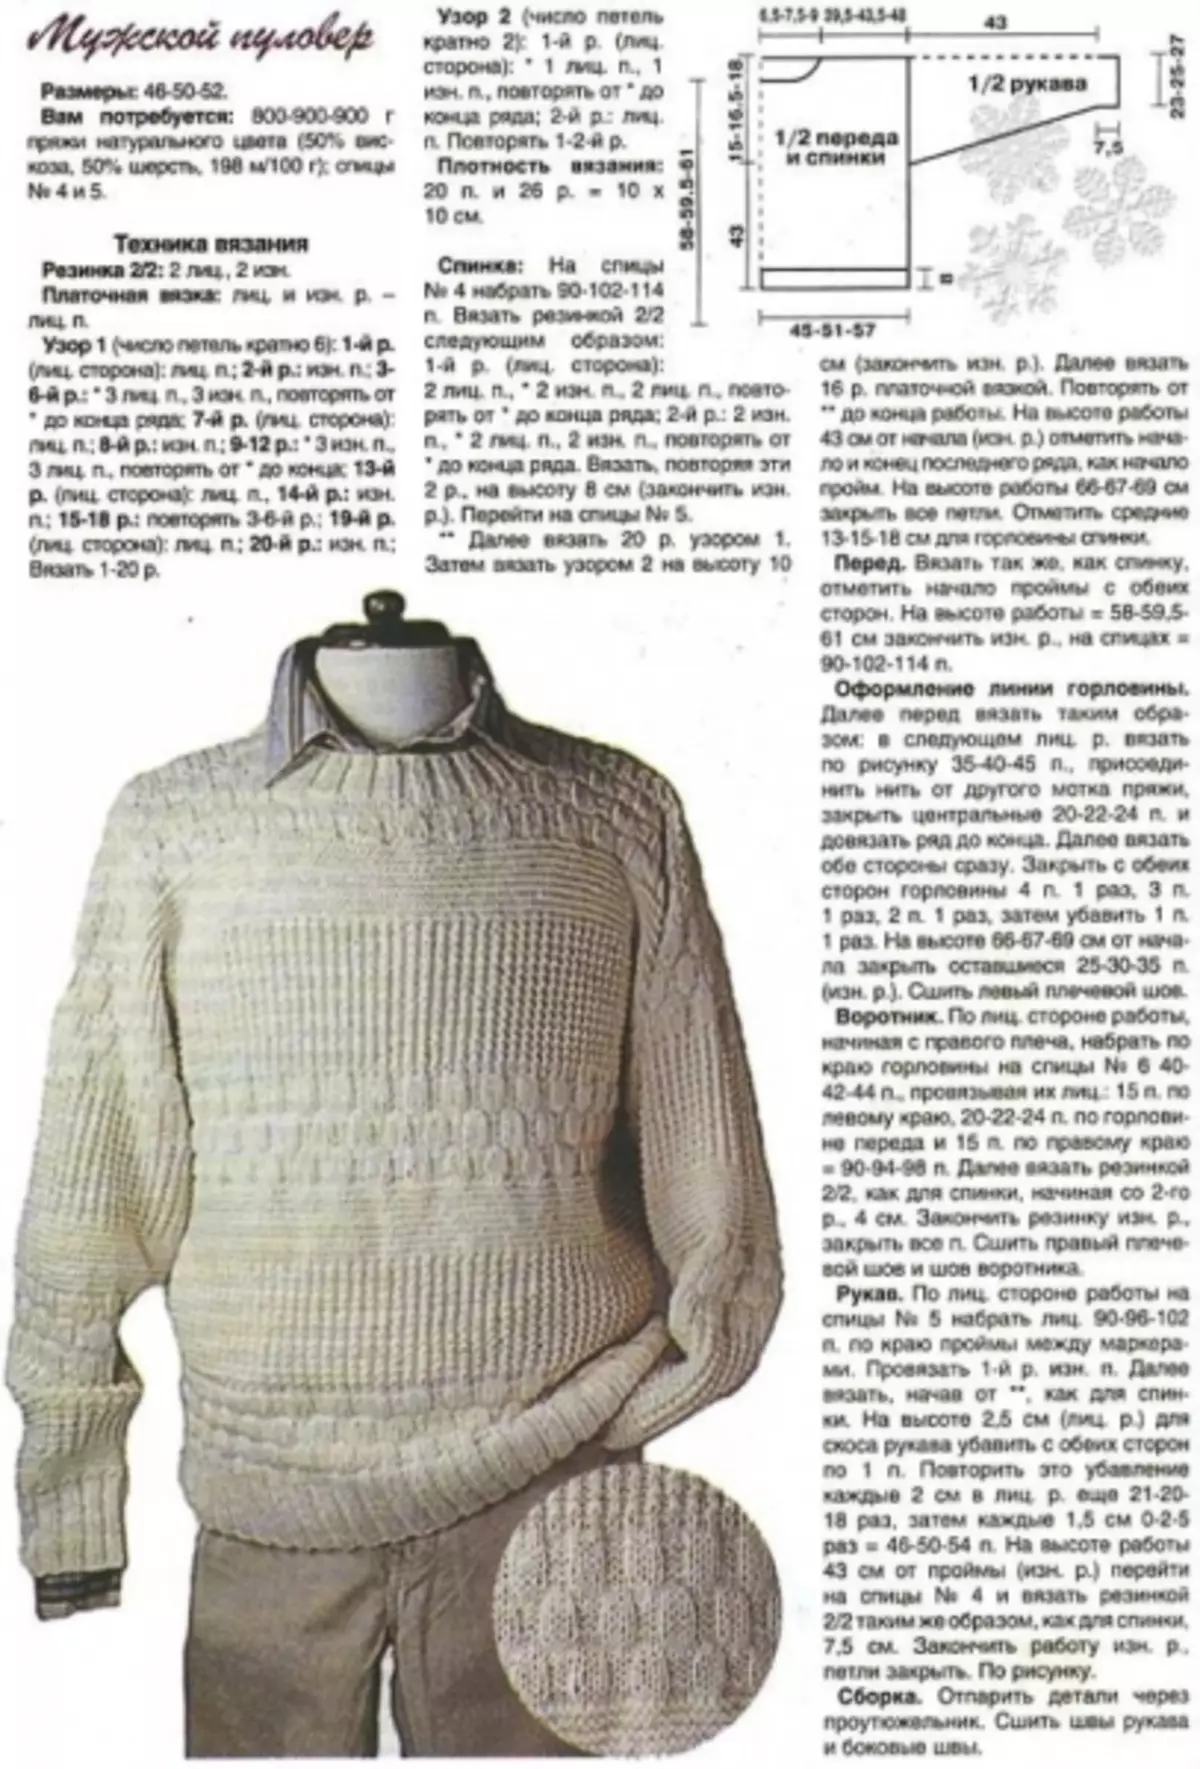 Biały męski sweter dziewiarski z opisem i schematami